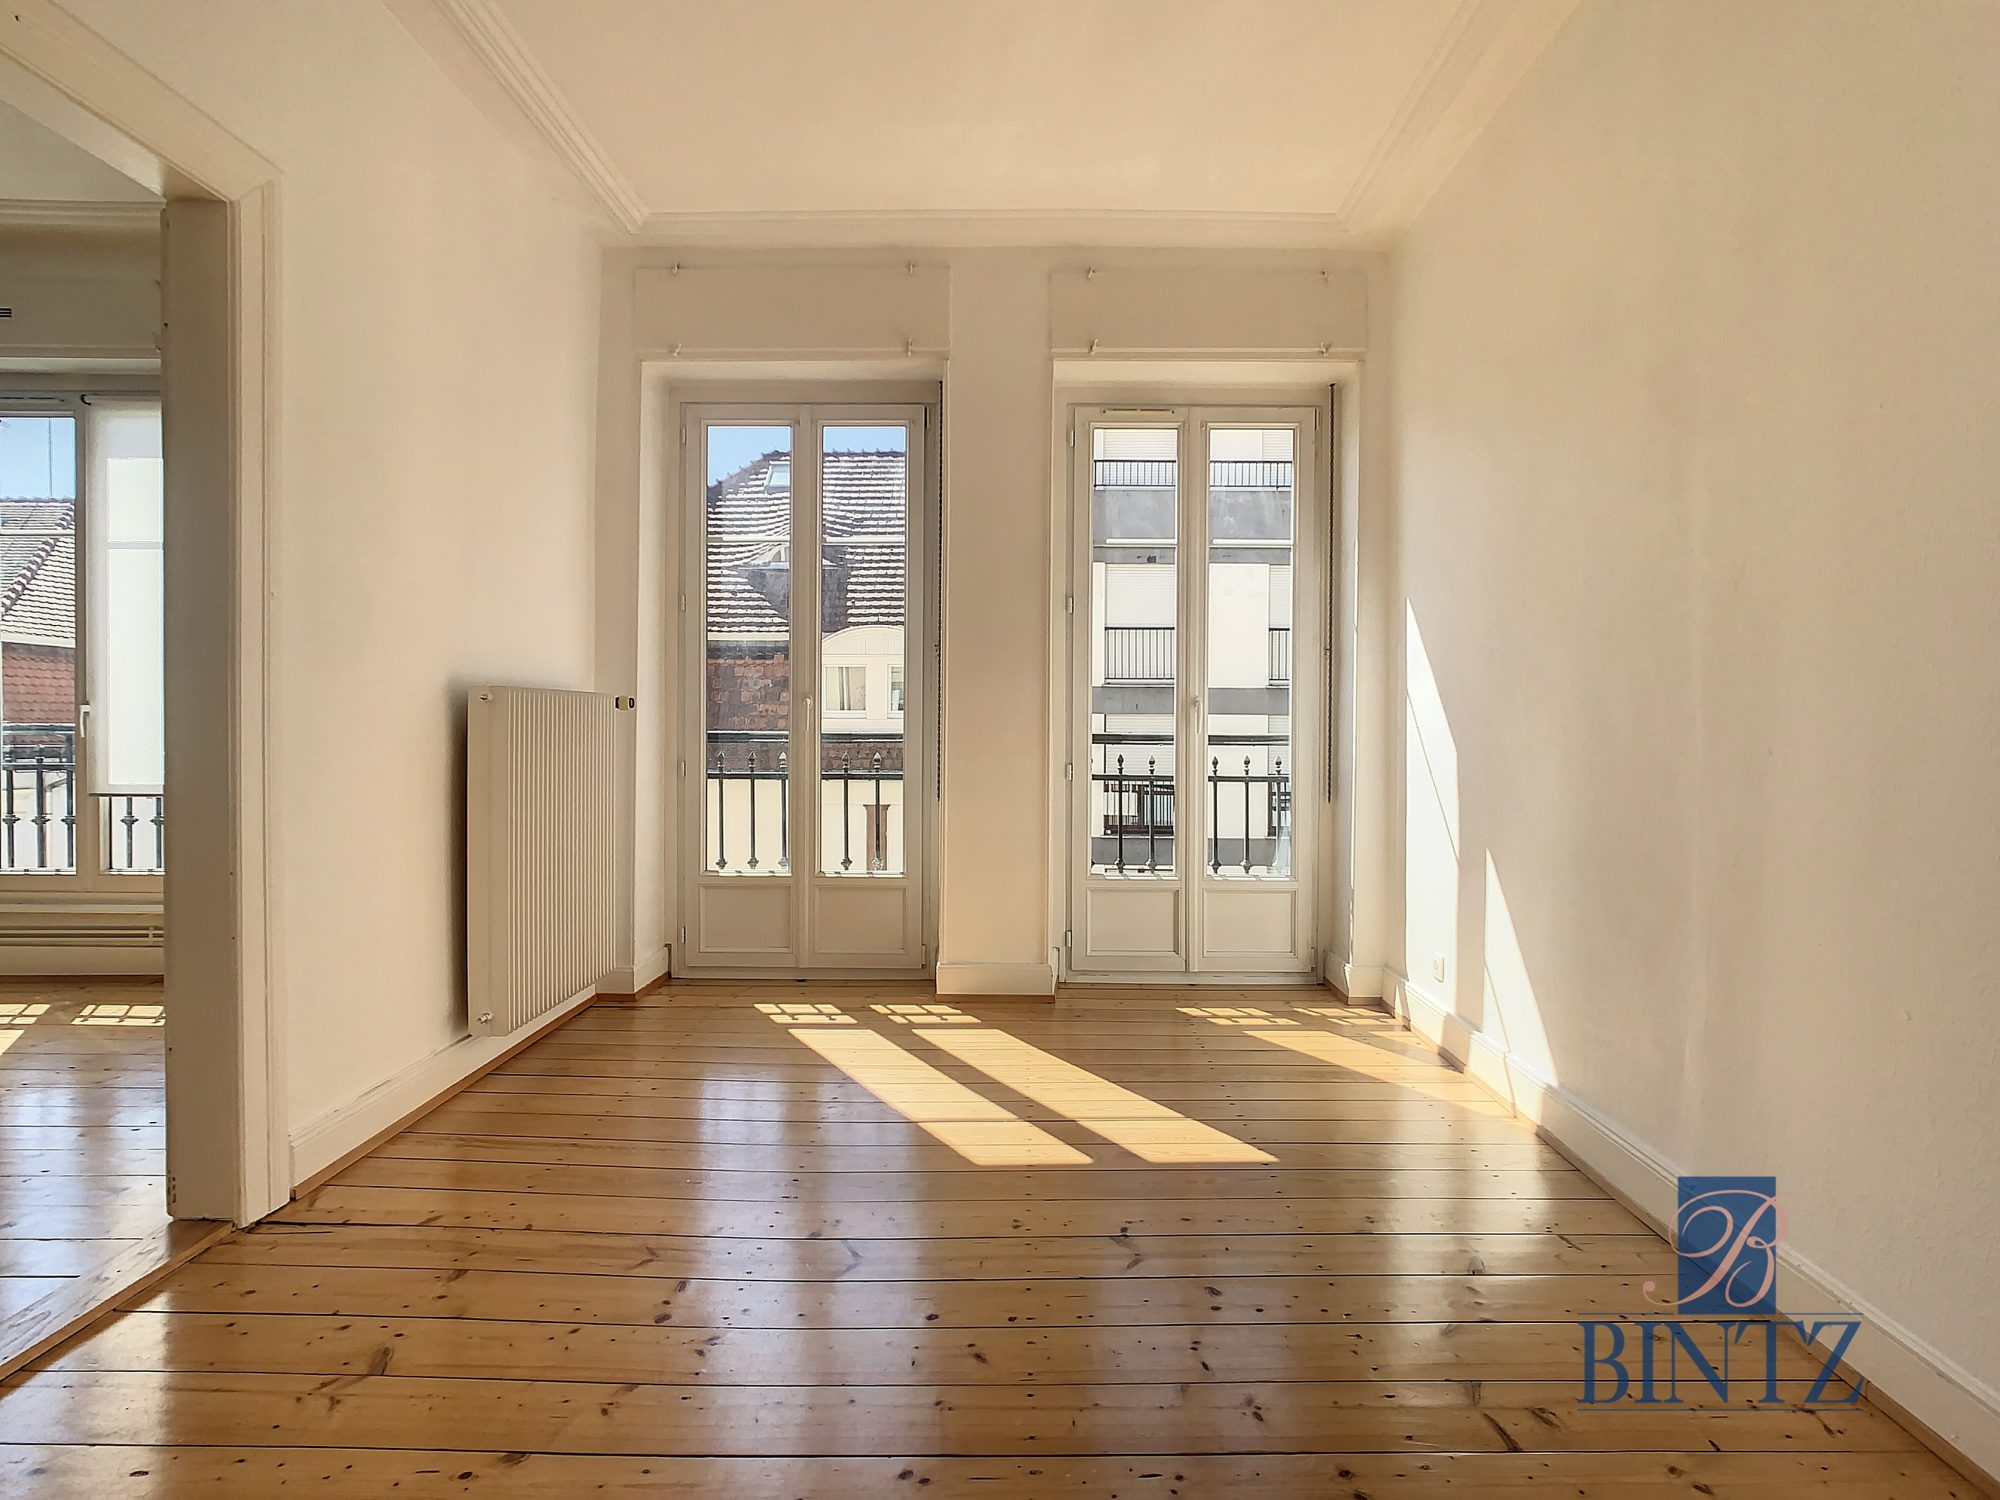 2 pièces 49m2 – St Aloïse - achat appartement Strasbourg - Bintz Immobilier - 5